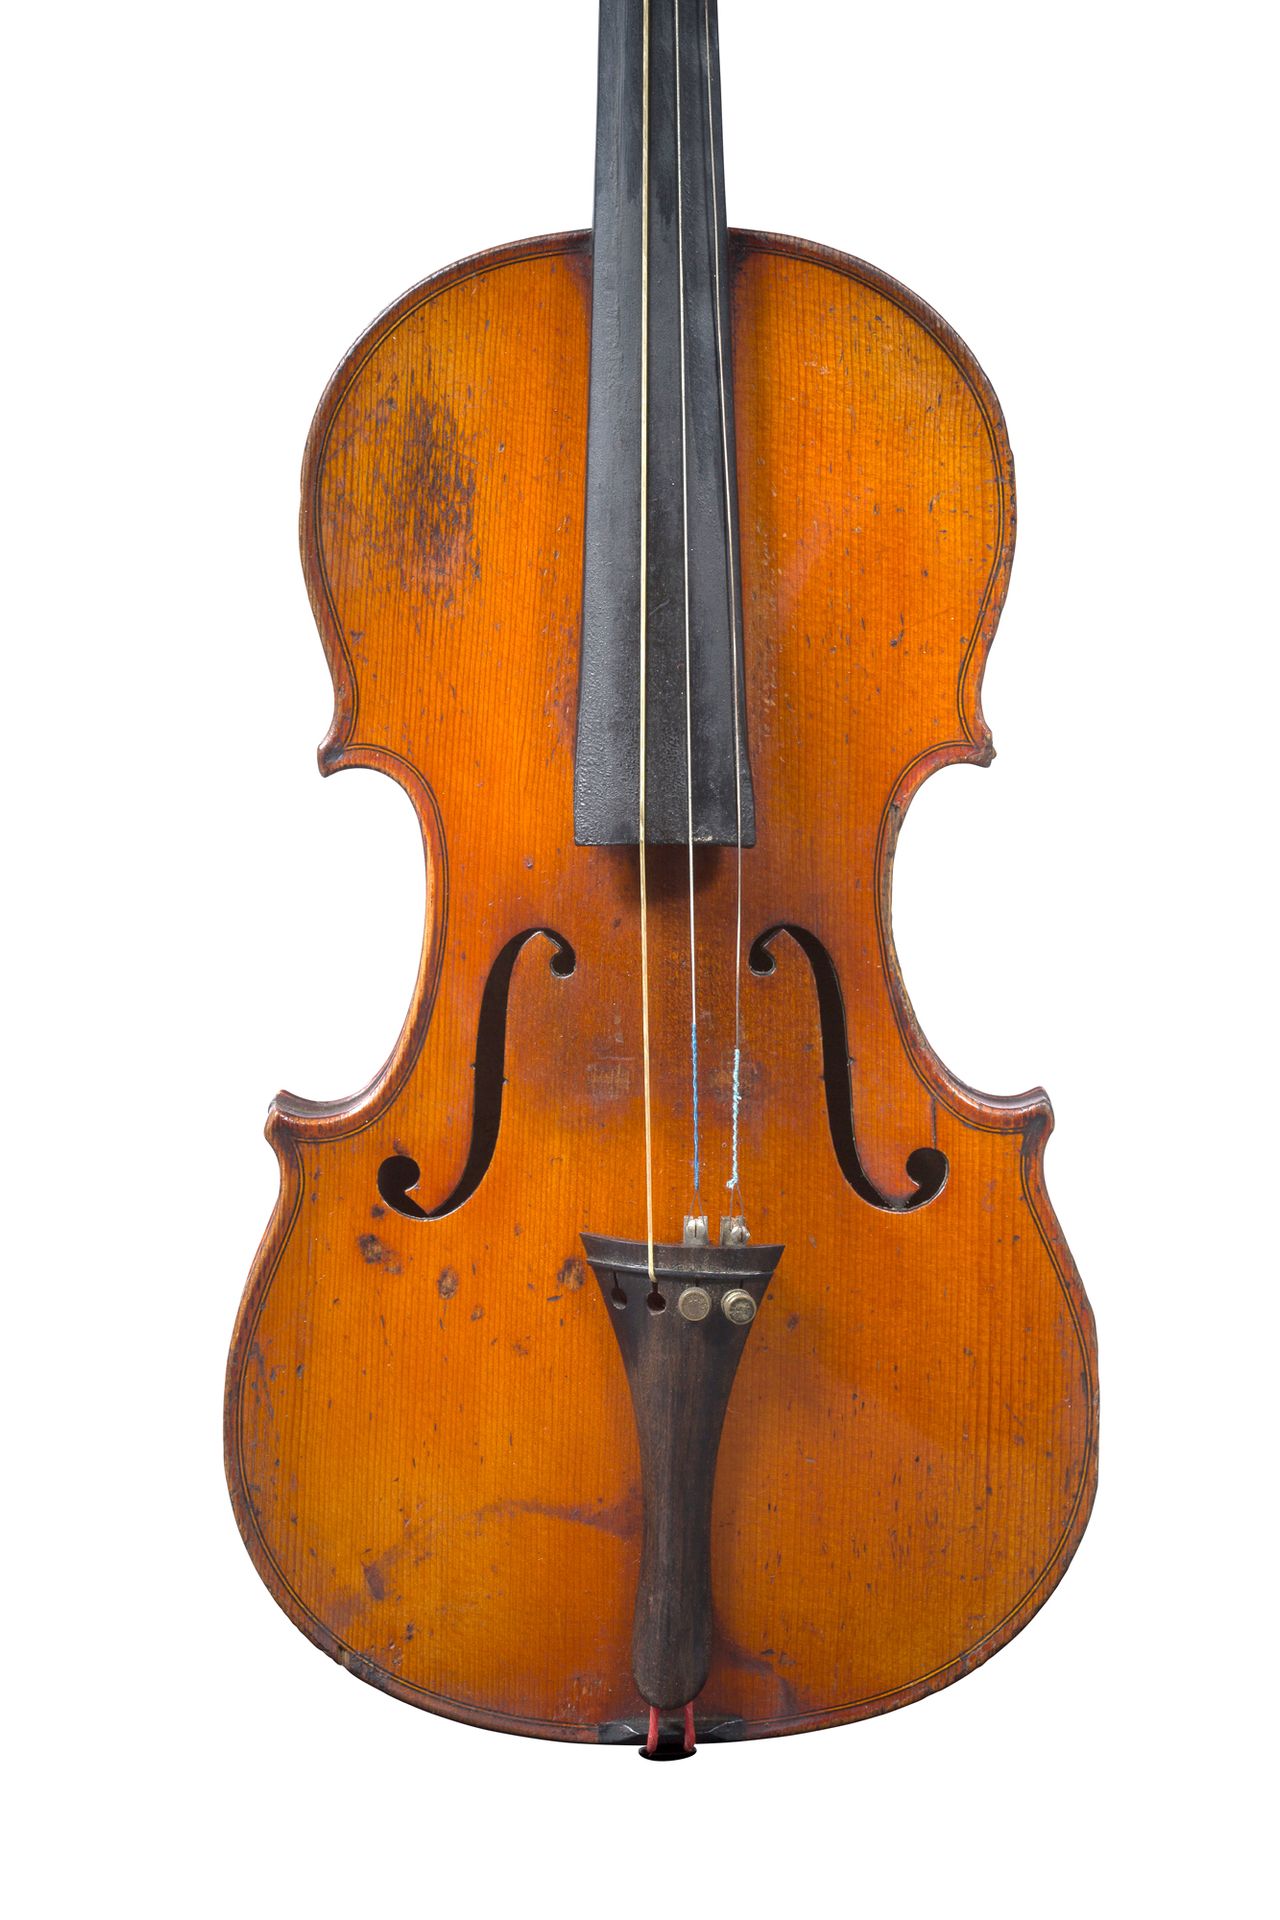 Null 20世纪初米勒库尔制造的研究型小提琴
工业工厂
带有斯特拉迪瓦里的标签副本
顶部有修复的痕迹
背面右上角缺失 
背面361毫米